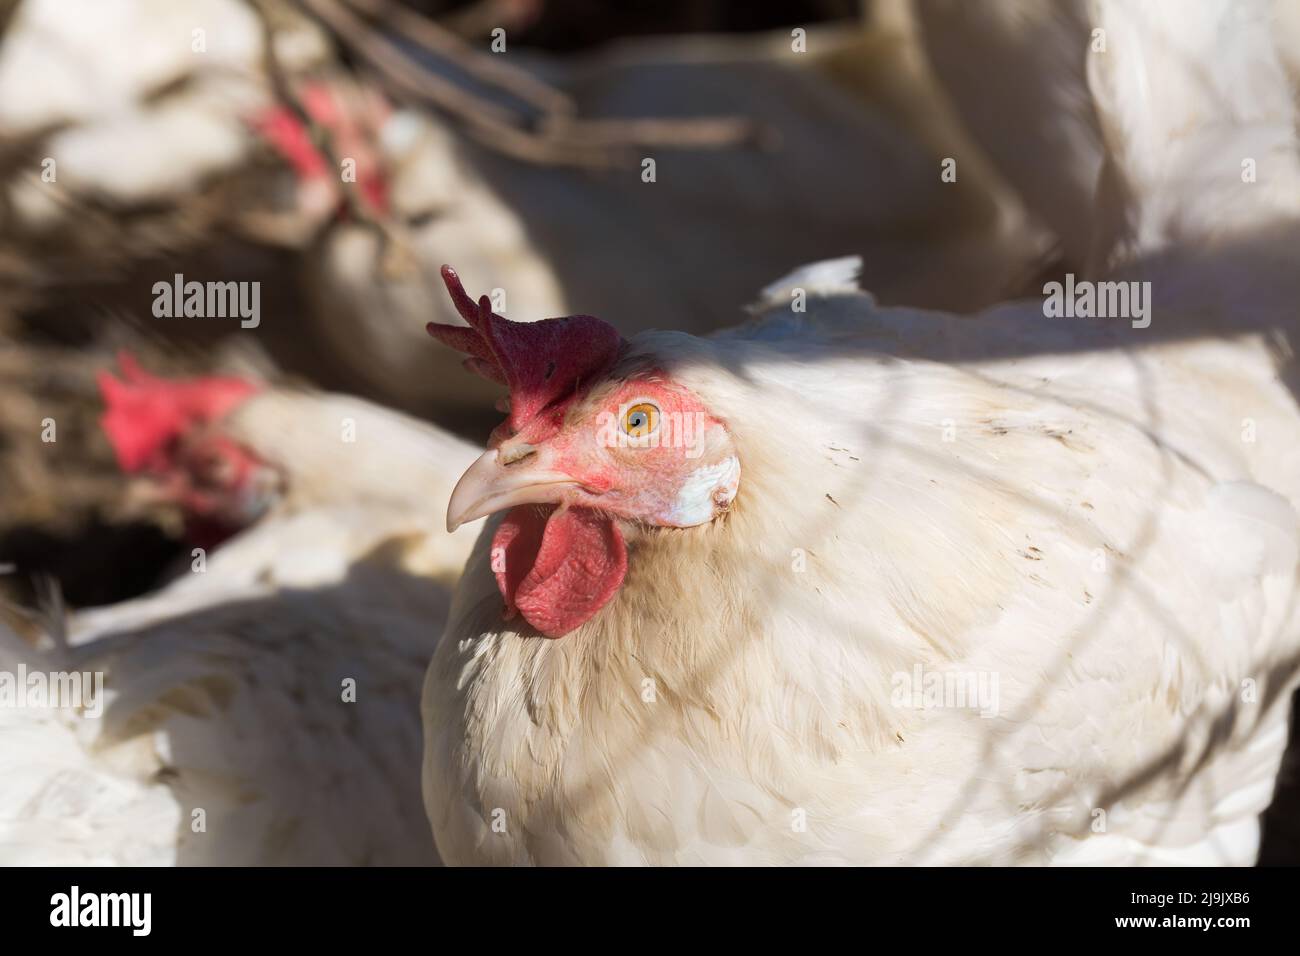 La poule blanche fait face à la caméra. Avec l'ombre d'une clôture sur son plumage. Symbole pour la volaille et la production d'oeufs. Banque D'Images